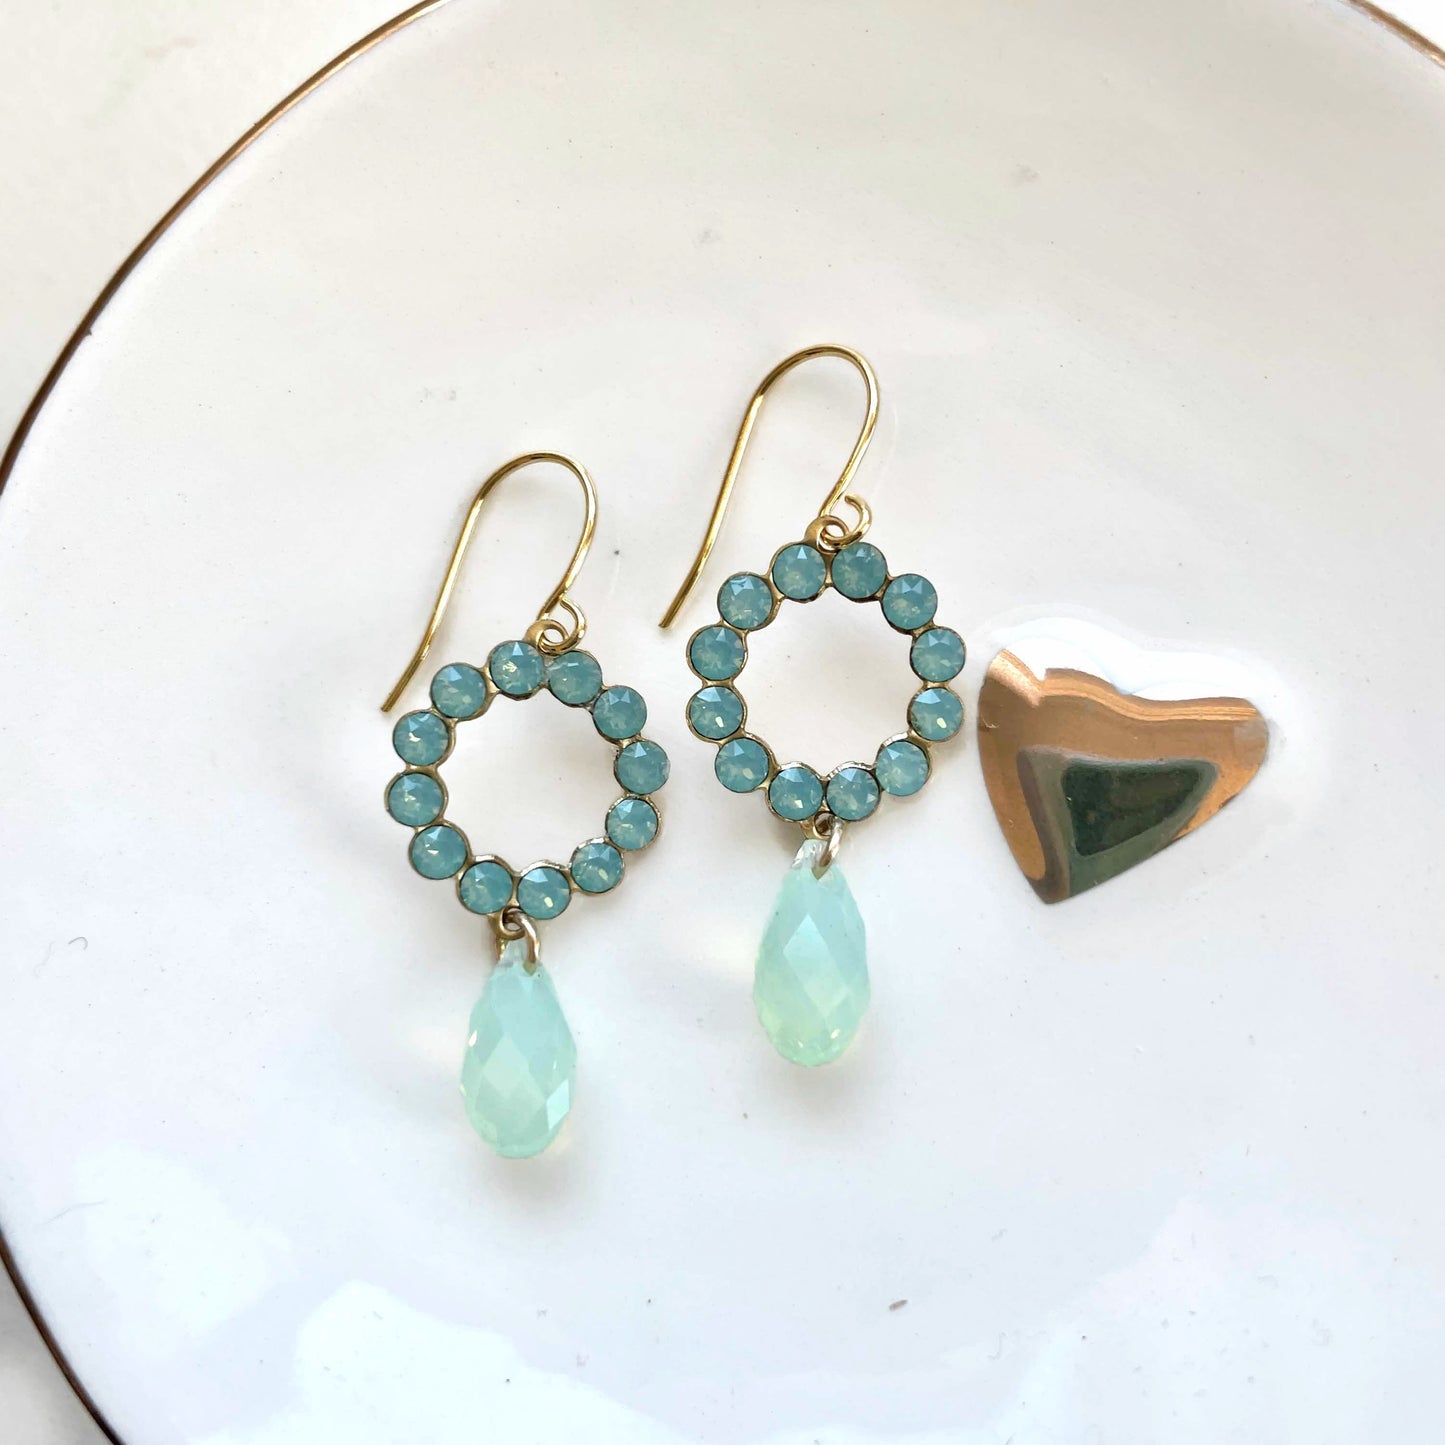 Mint green opal crystal wreath earrings